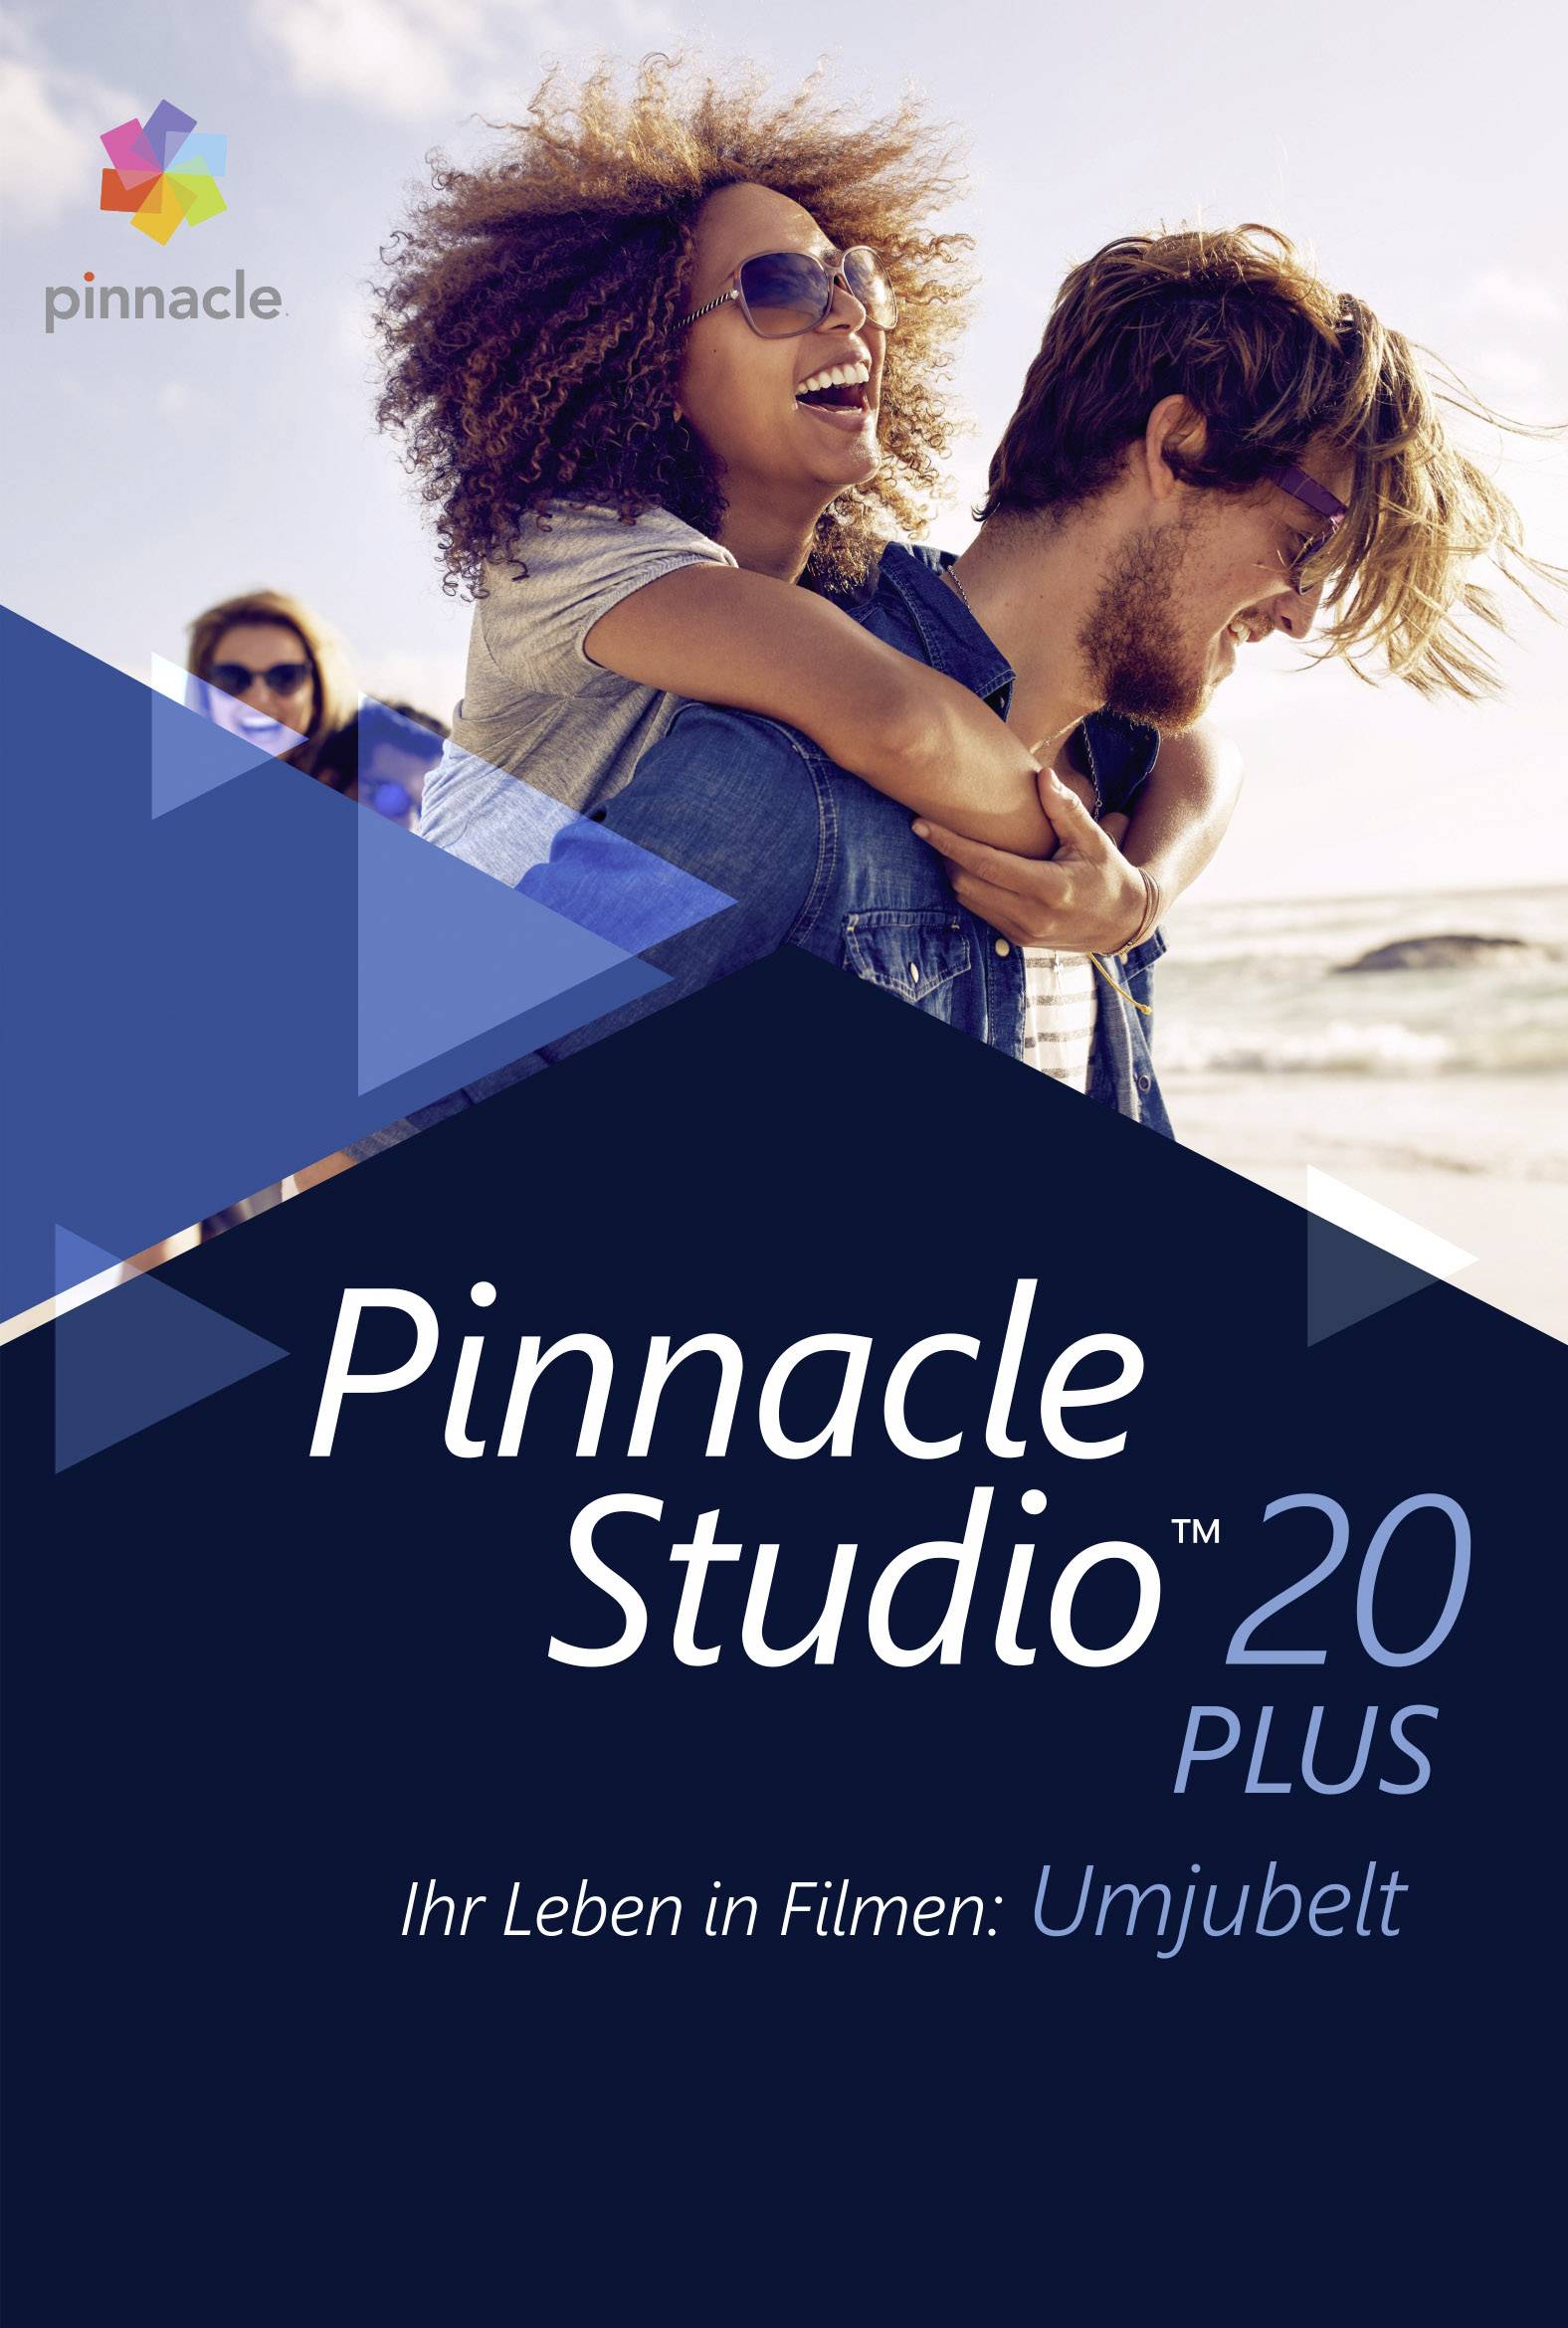 pinnacle studio 20 vs pinnacle studio 20 ultimate